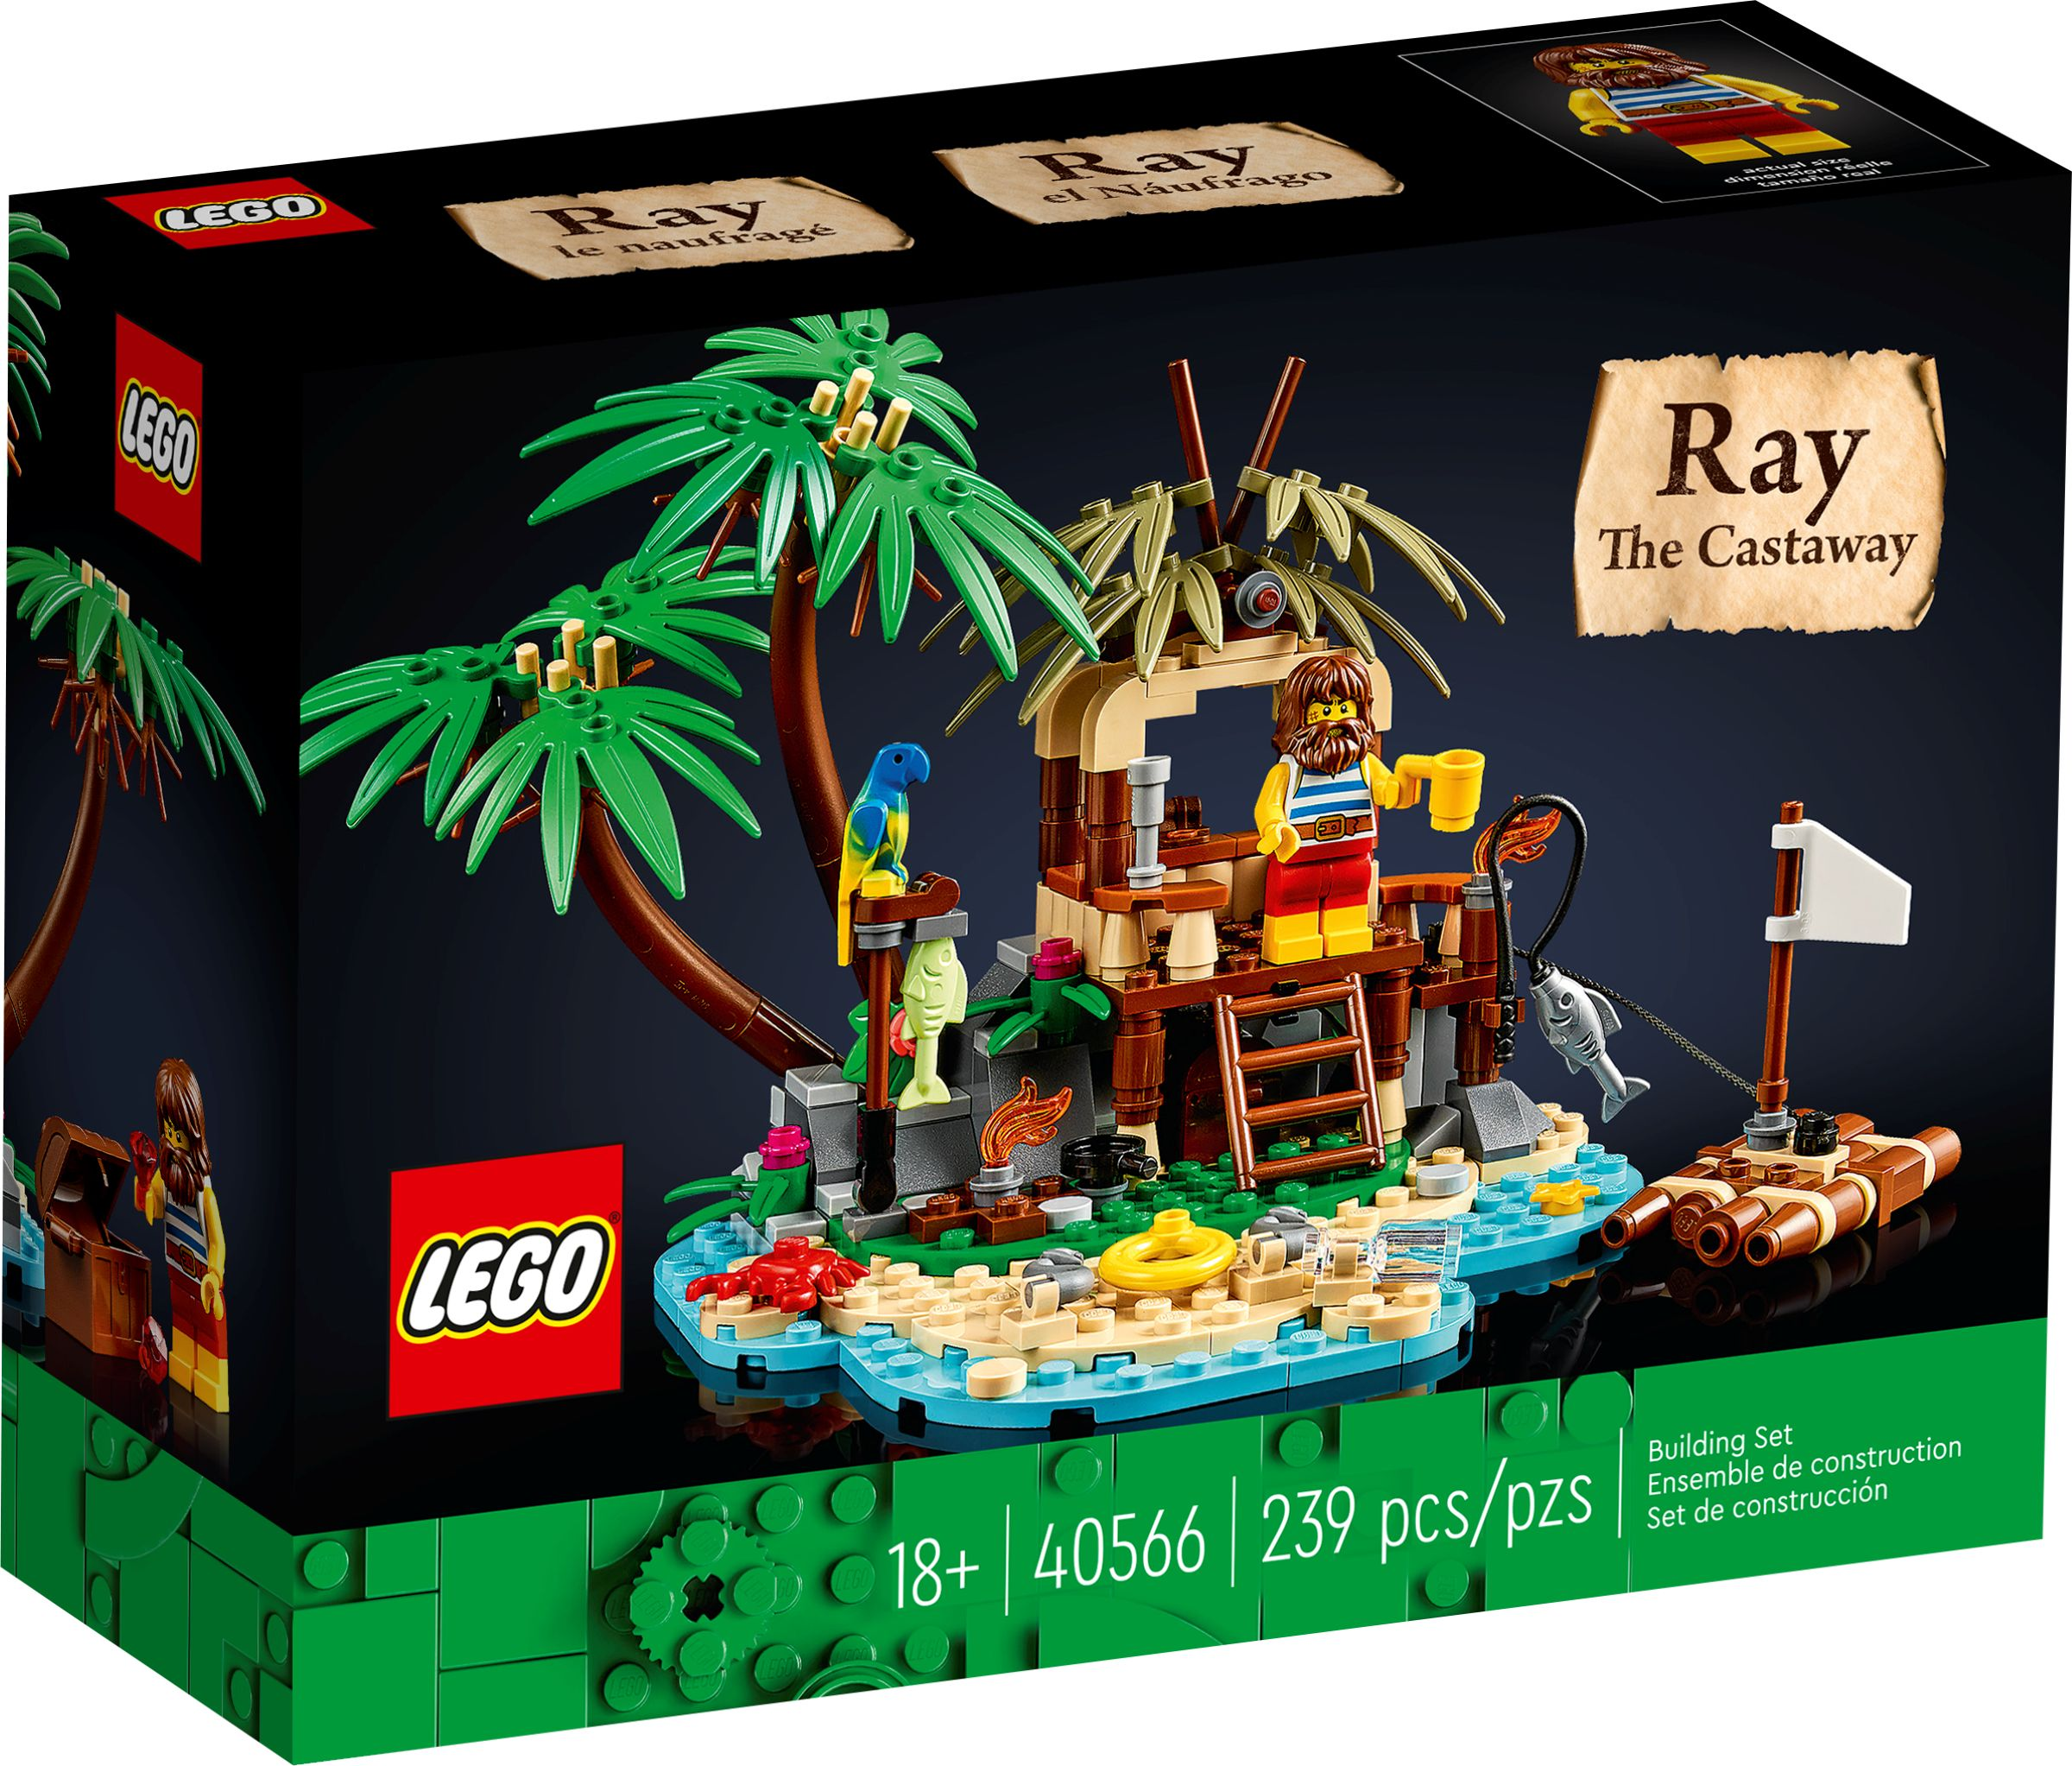 Bausatz Schiffbrüchige 40566 der LEGO Ray